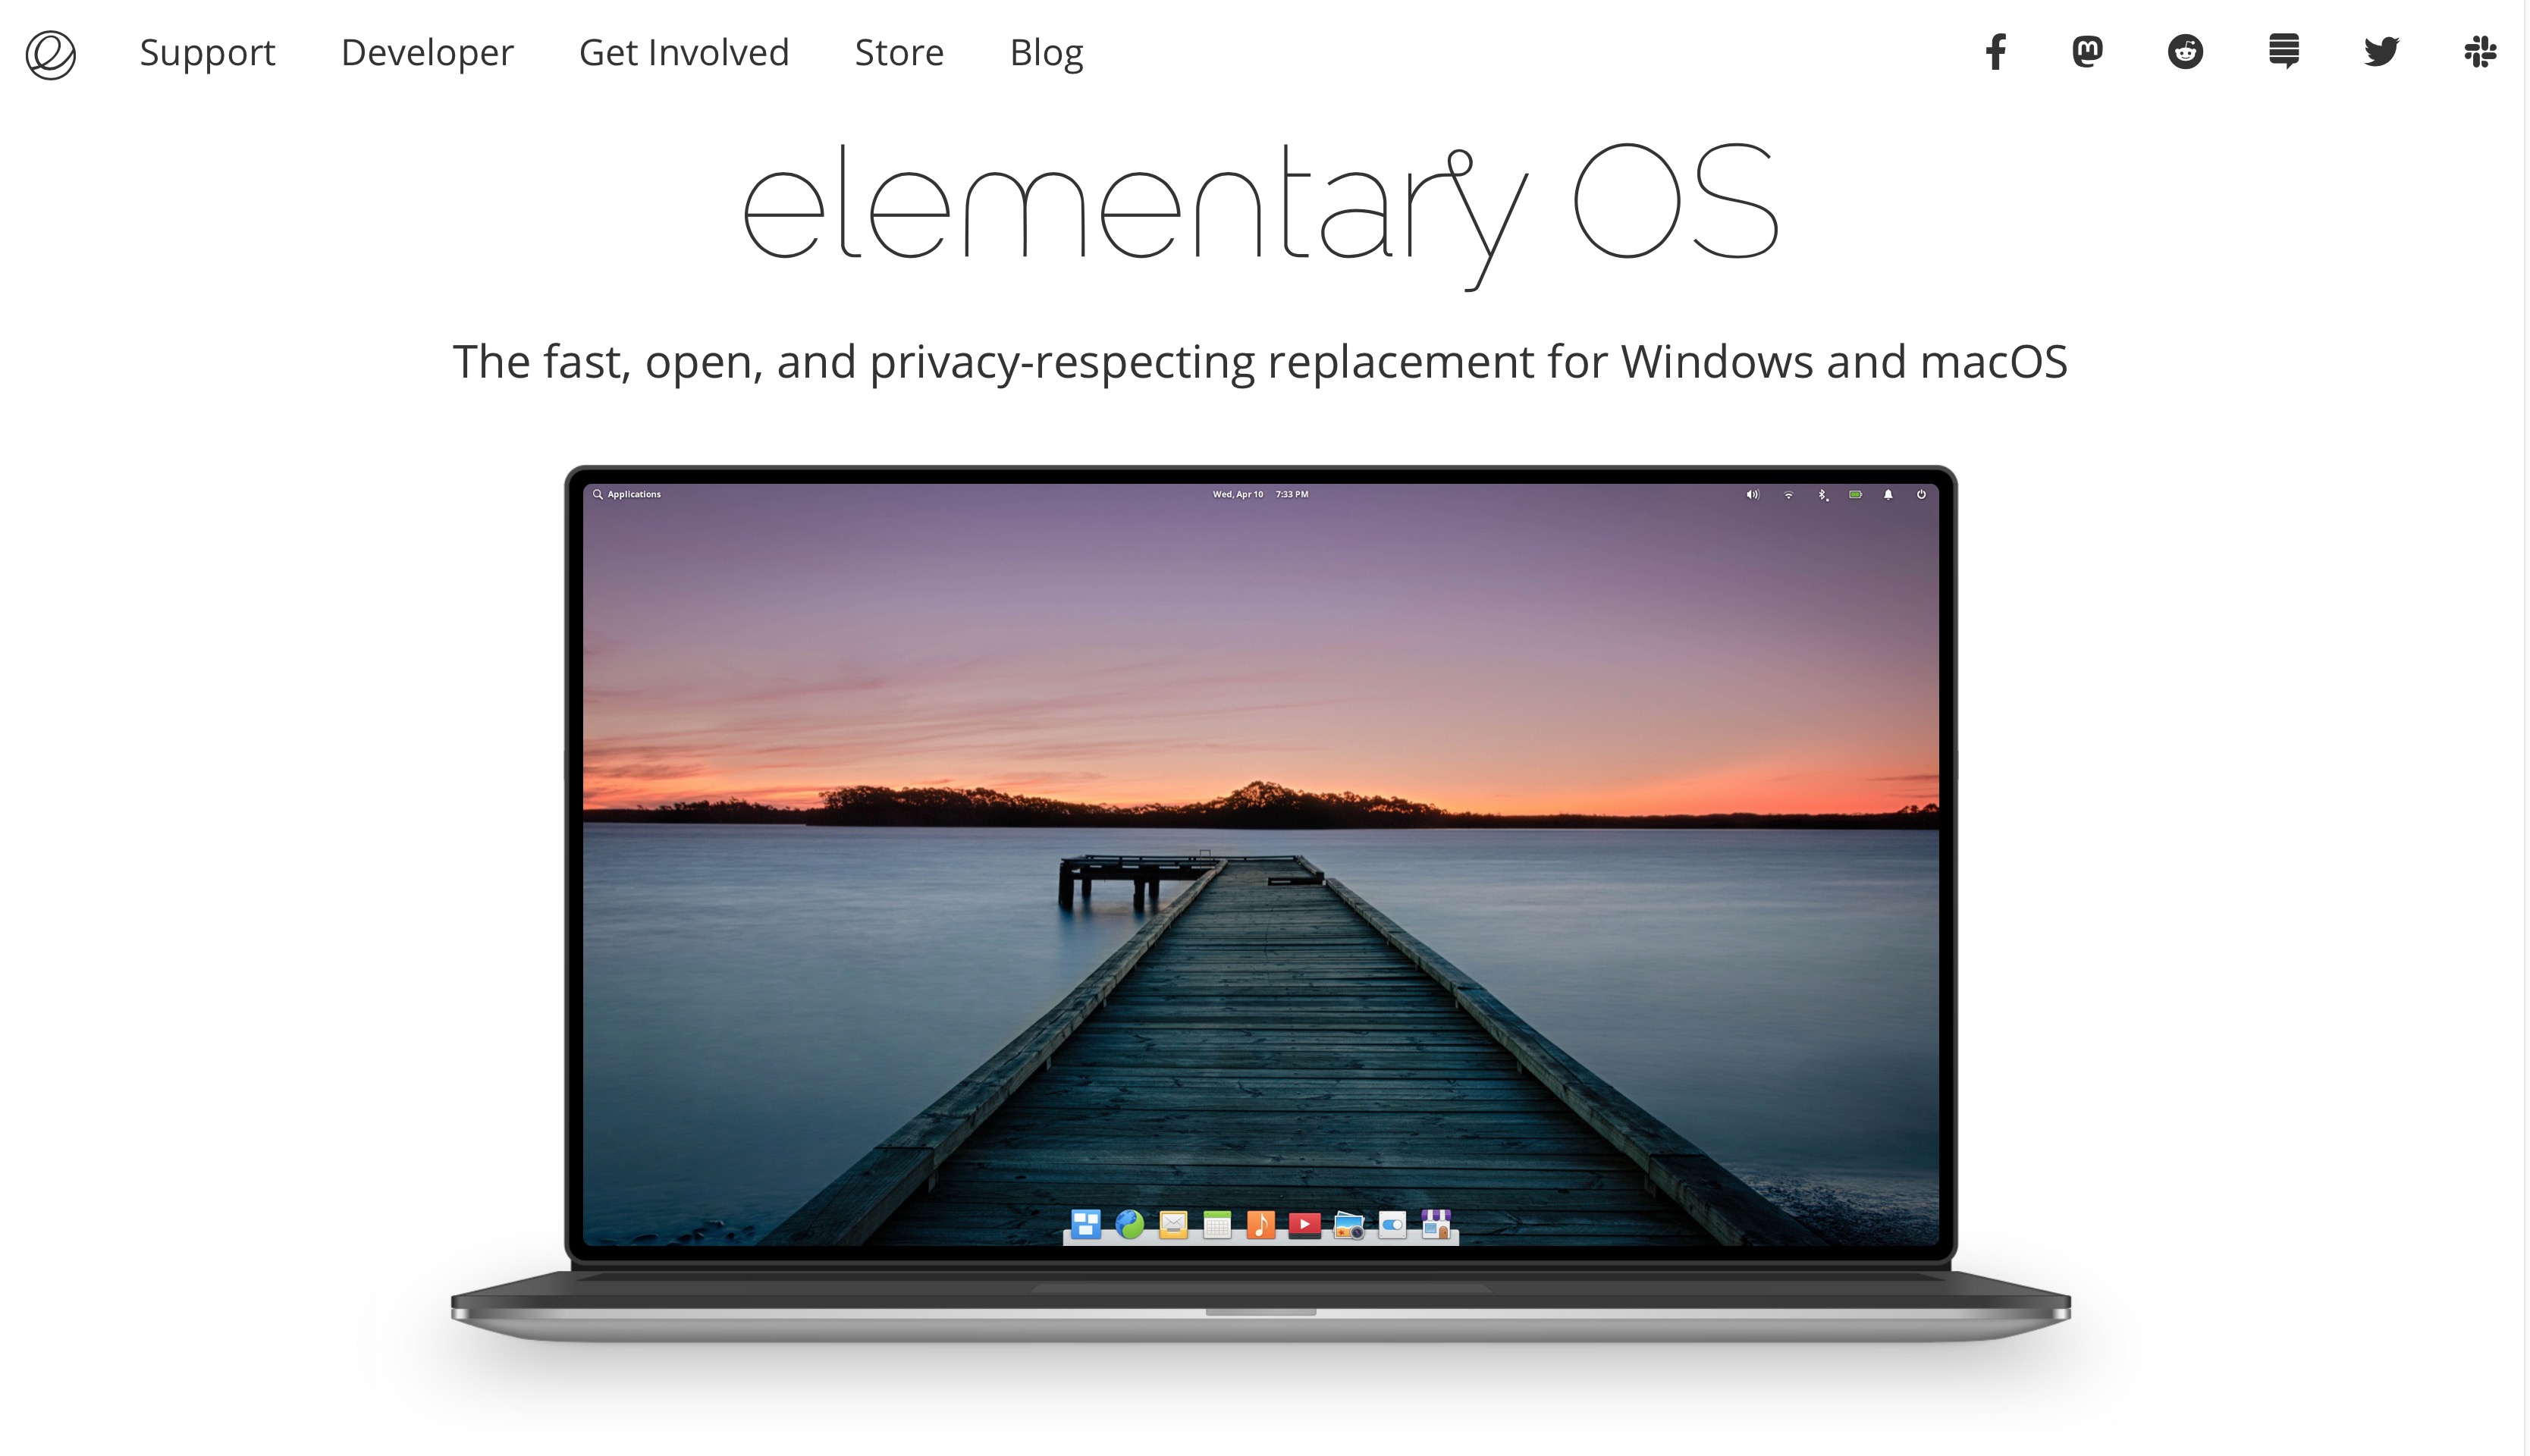 Các bác dùng thử HDH  *Elementary OS* này chưa ạ. Thấy đánh giá là Nhẹ và Đẹp hơn MAC OS với...